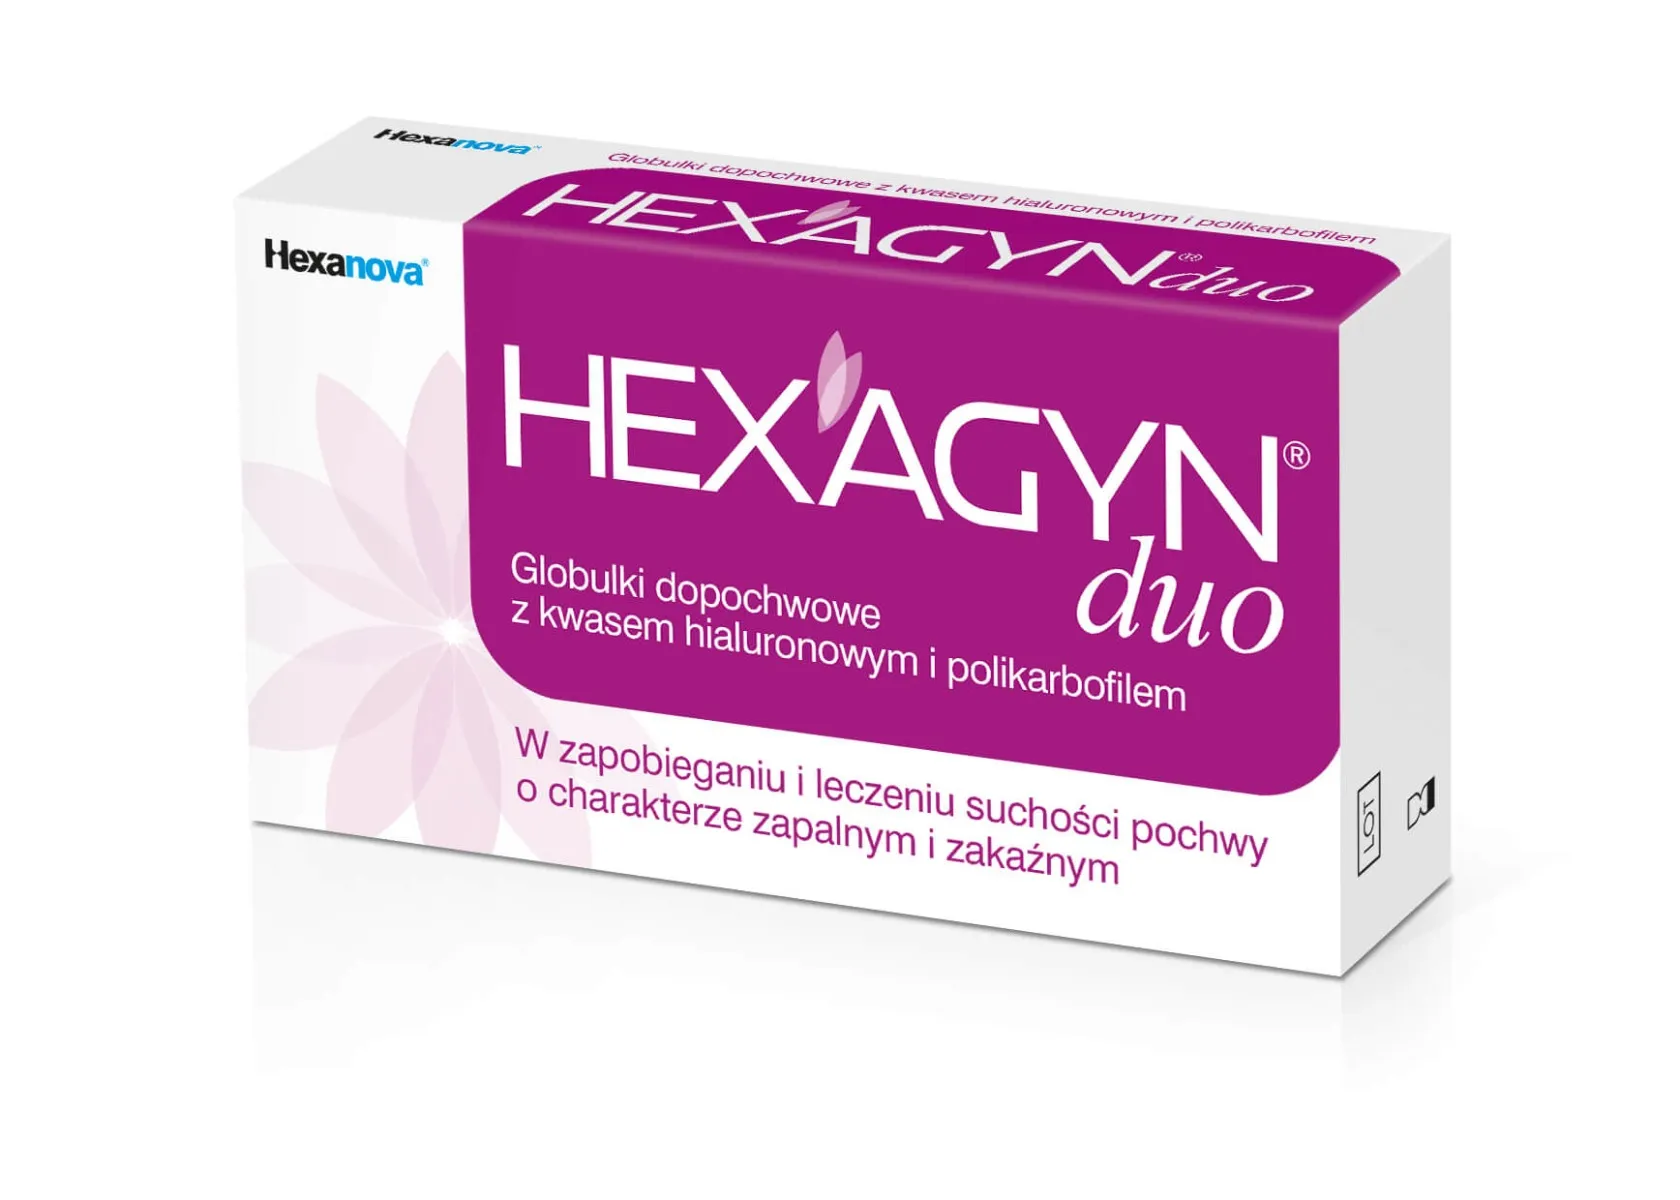 Hexagyn Duo, globulki dopochwowe, 10 globulek po 2 g każda 